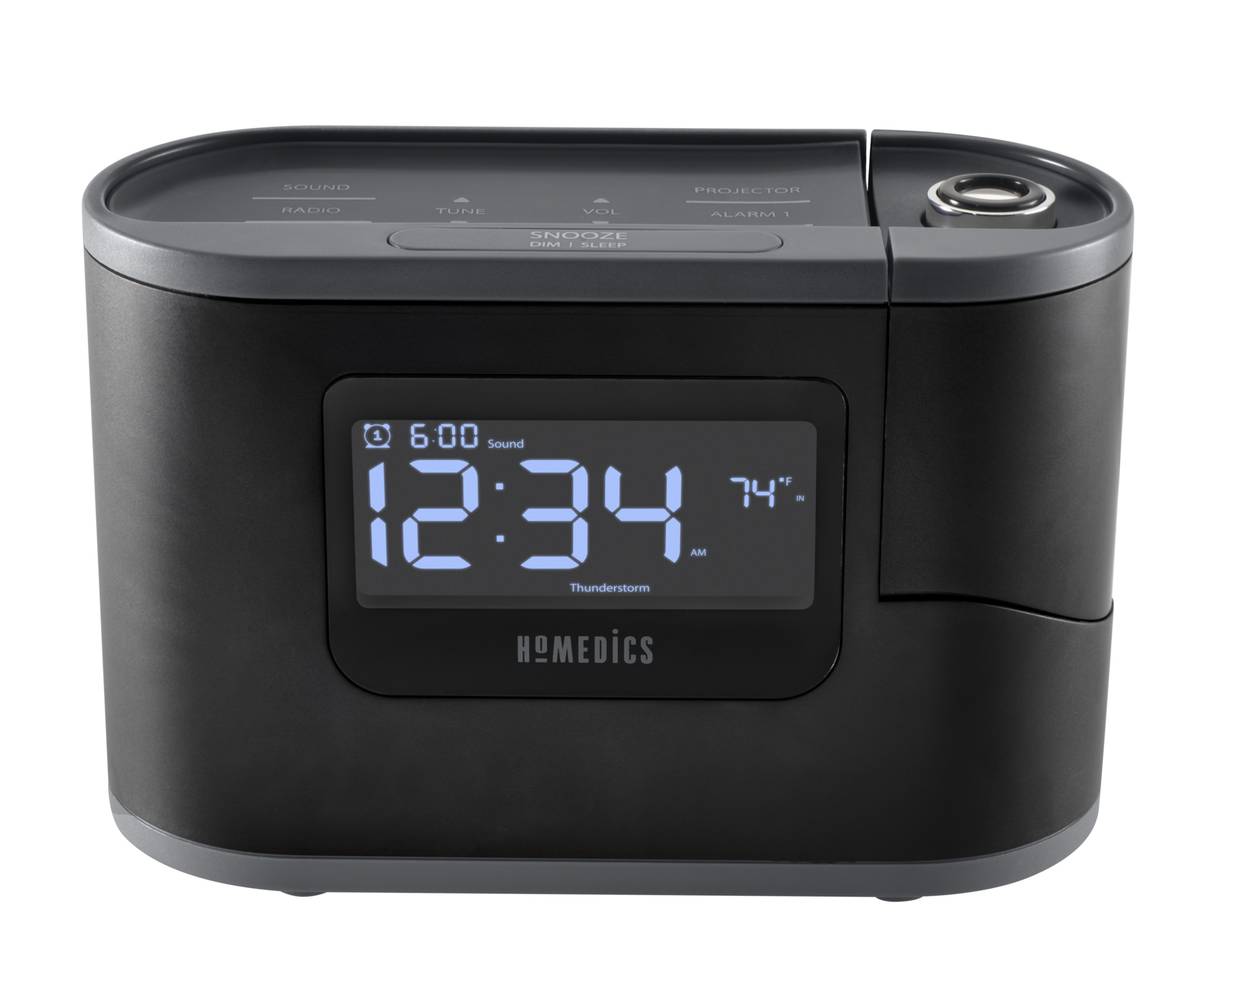 Homedics SoundSpa Recharged Projection Alarm Clock with Temperature Sensor